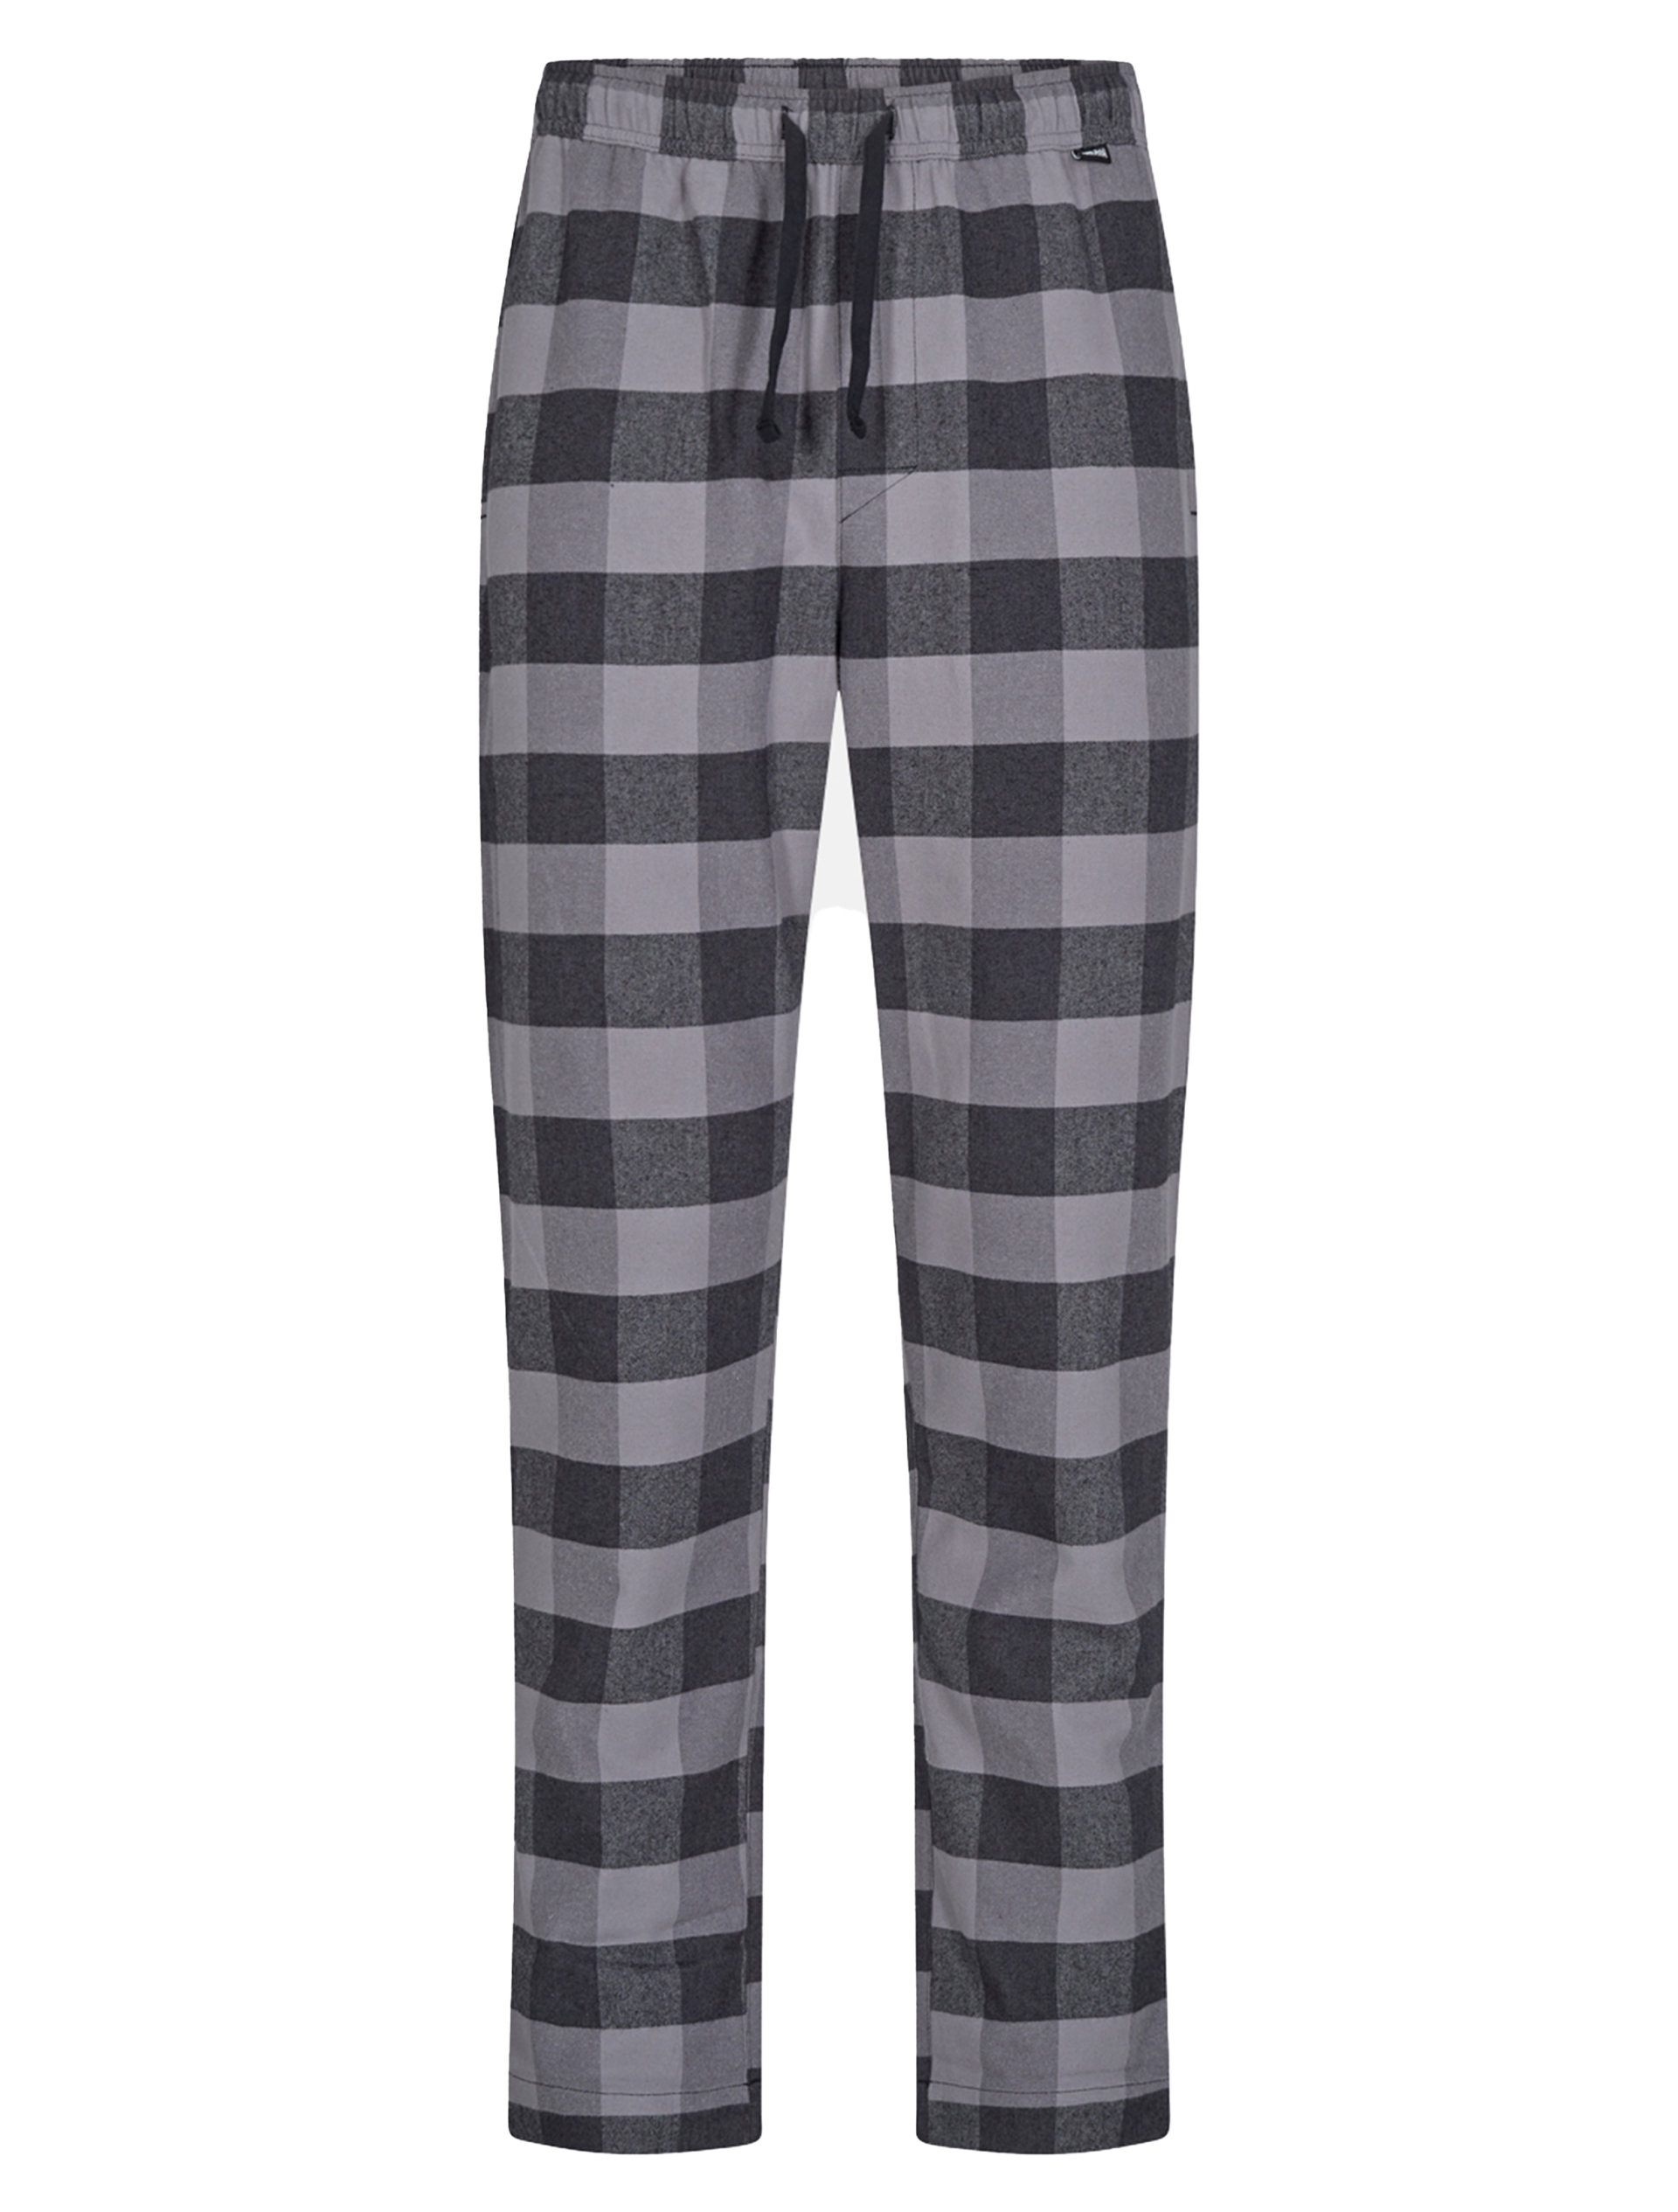 JBS Pyjamas grå / 1300 grey black